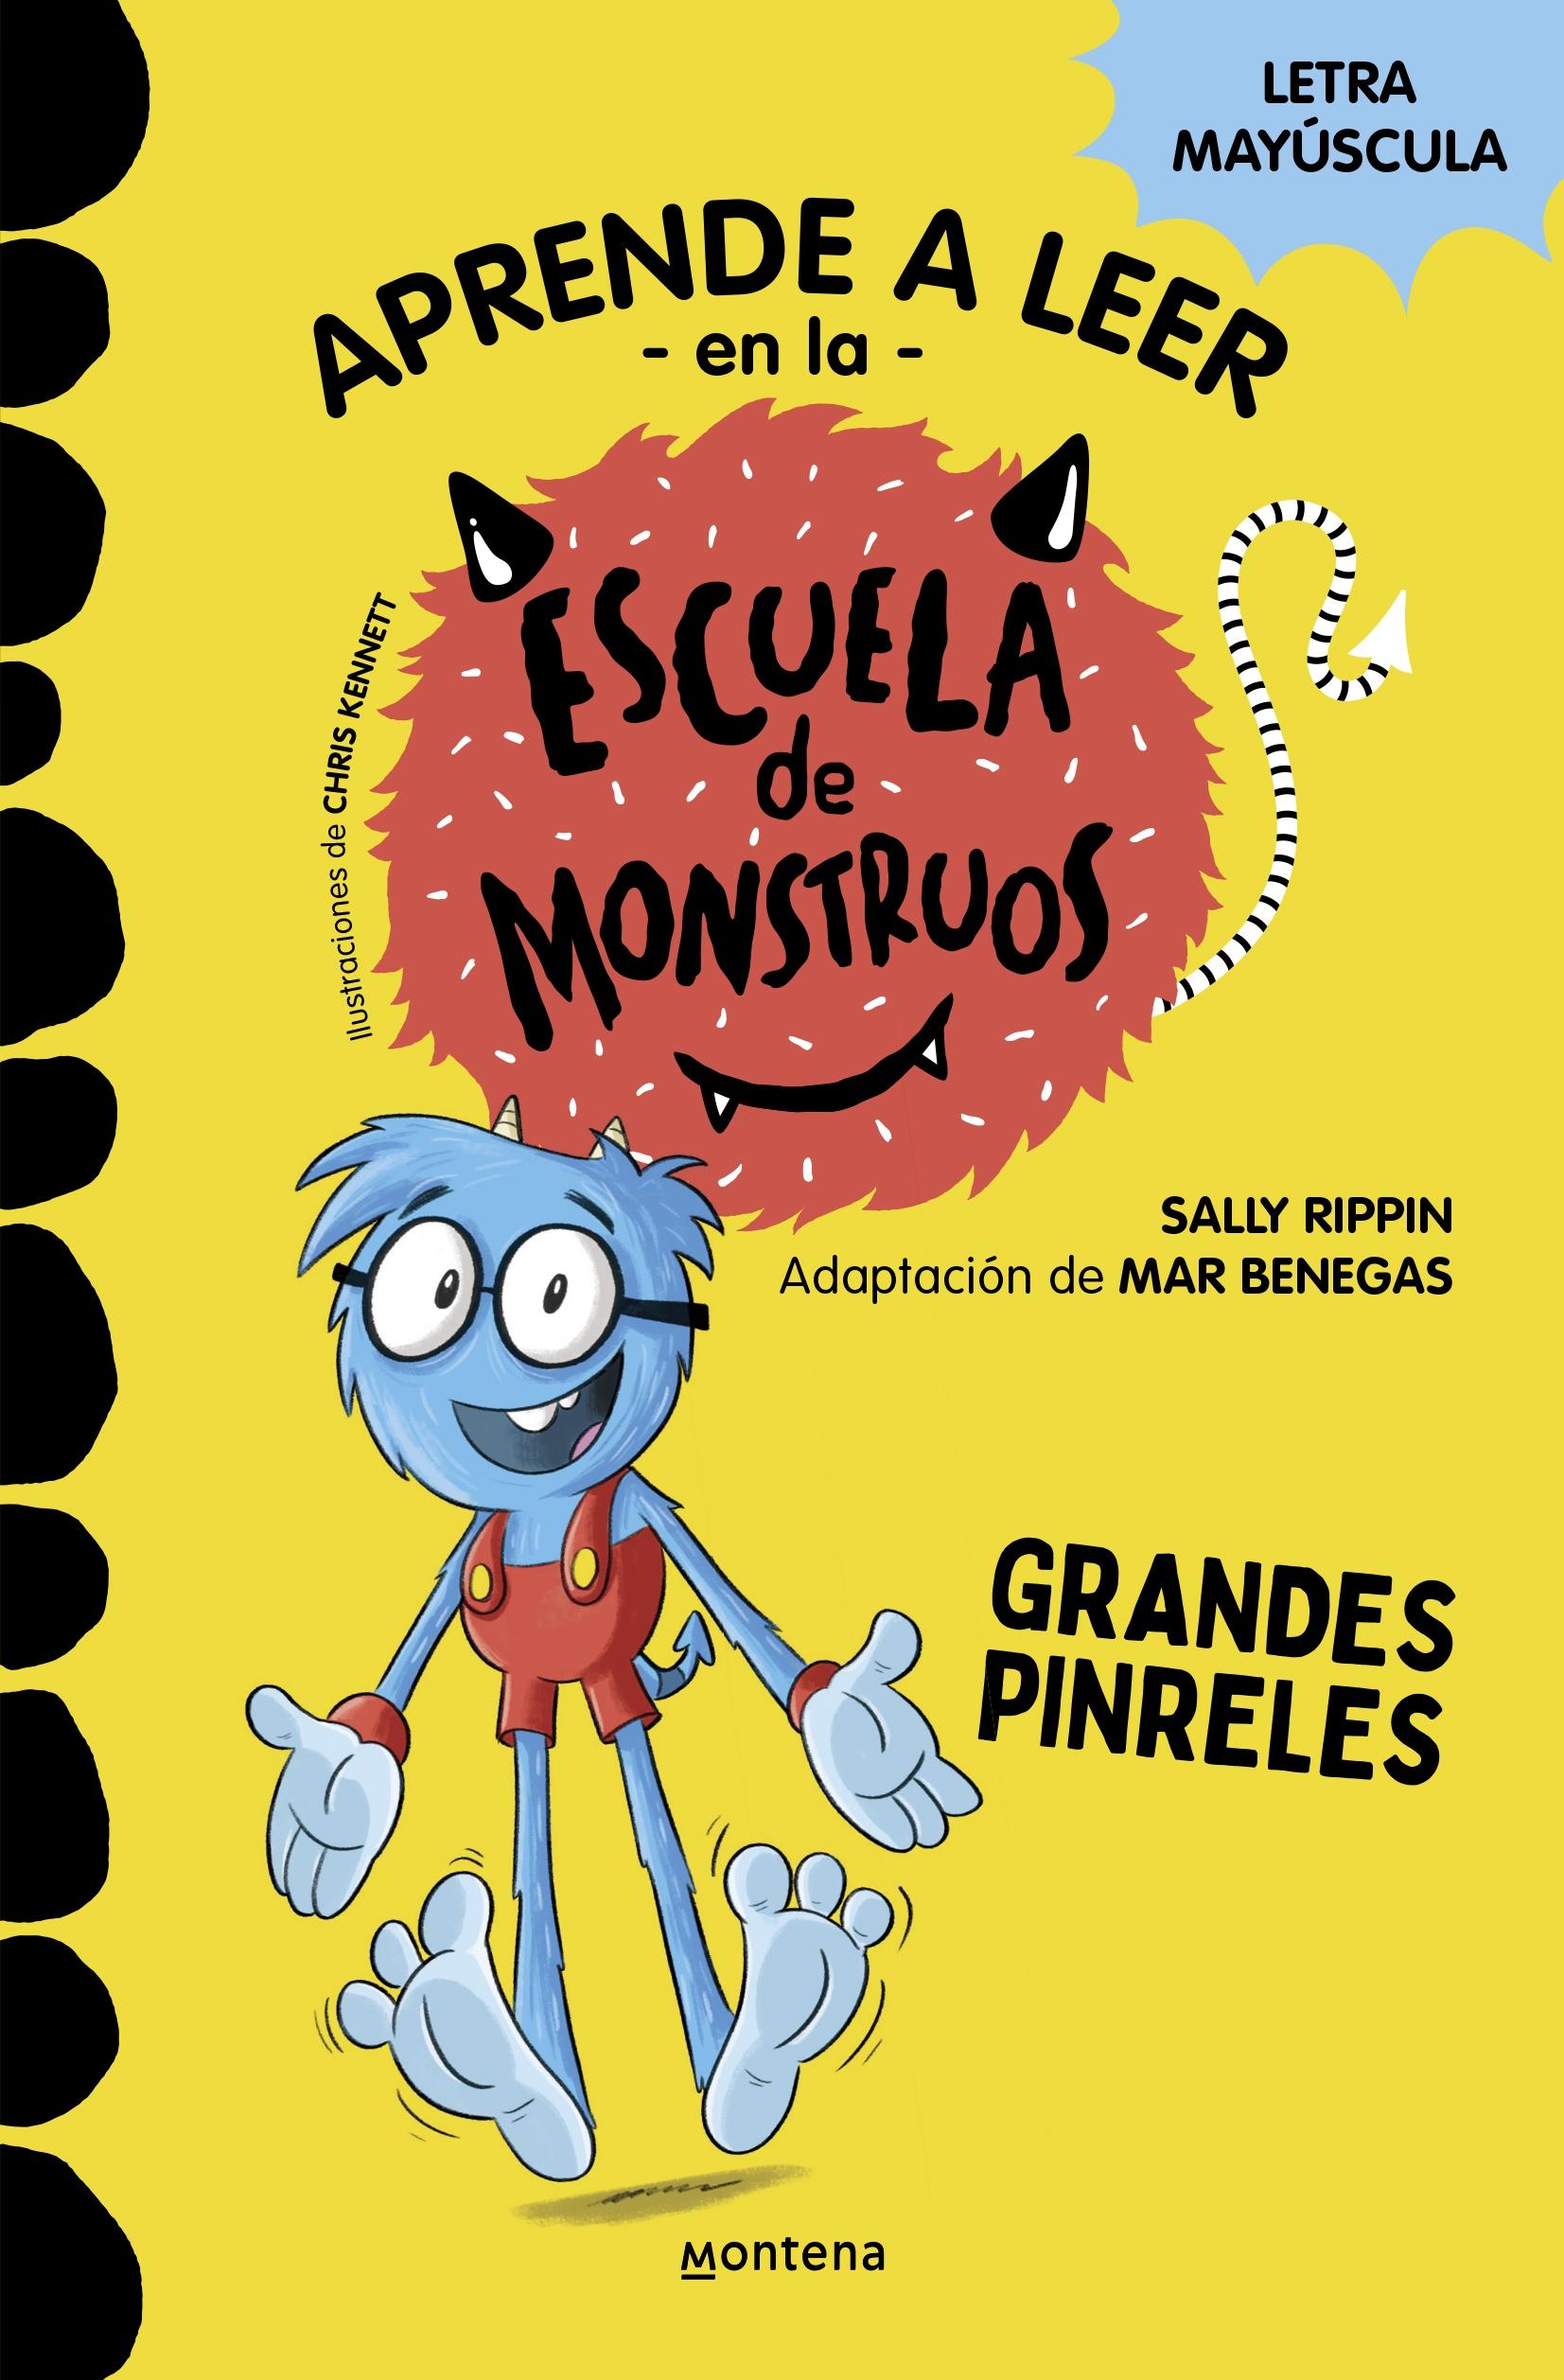  Escuela de Monstruos 4 - Grandes Pinreles "Mayúsculas". 